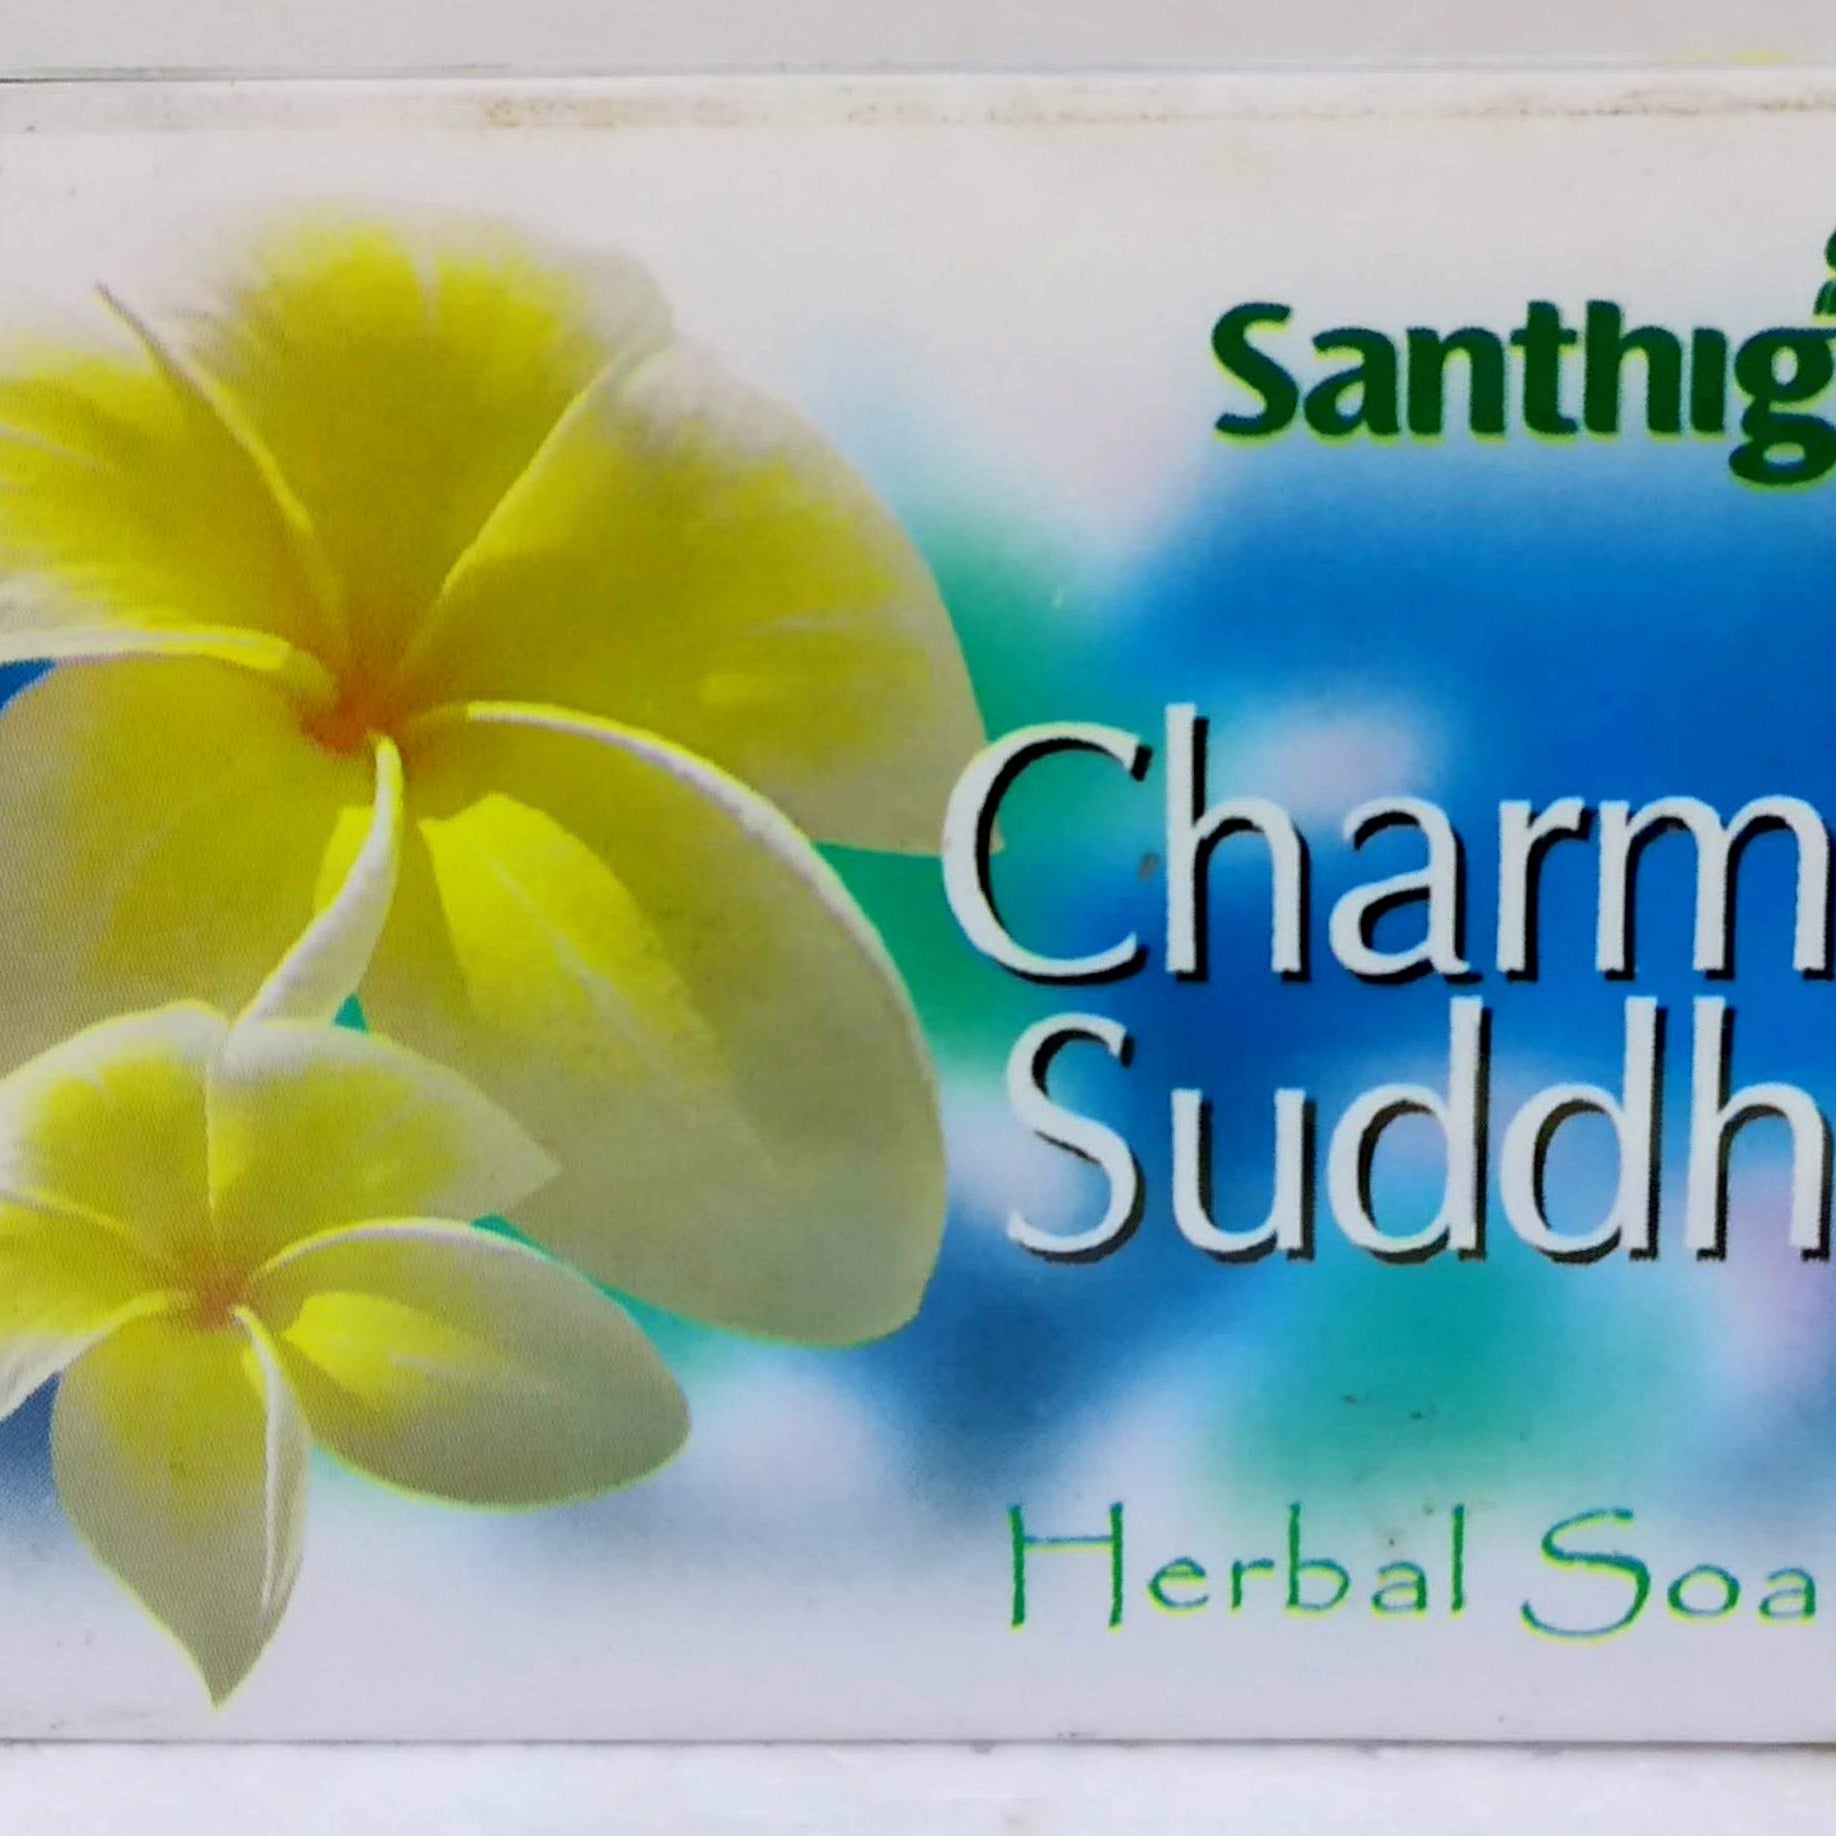 Shop Santhigiri Charma Suddhi Soap 75gm at price 30.00 from Santhigiri Online - Ayush Care